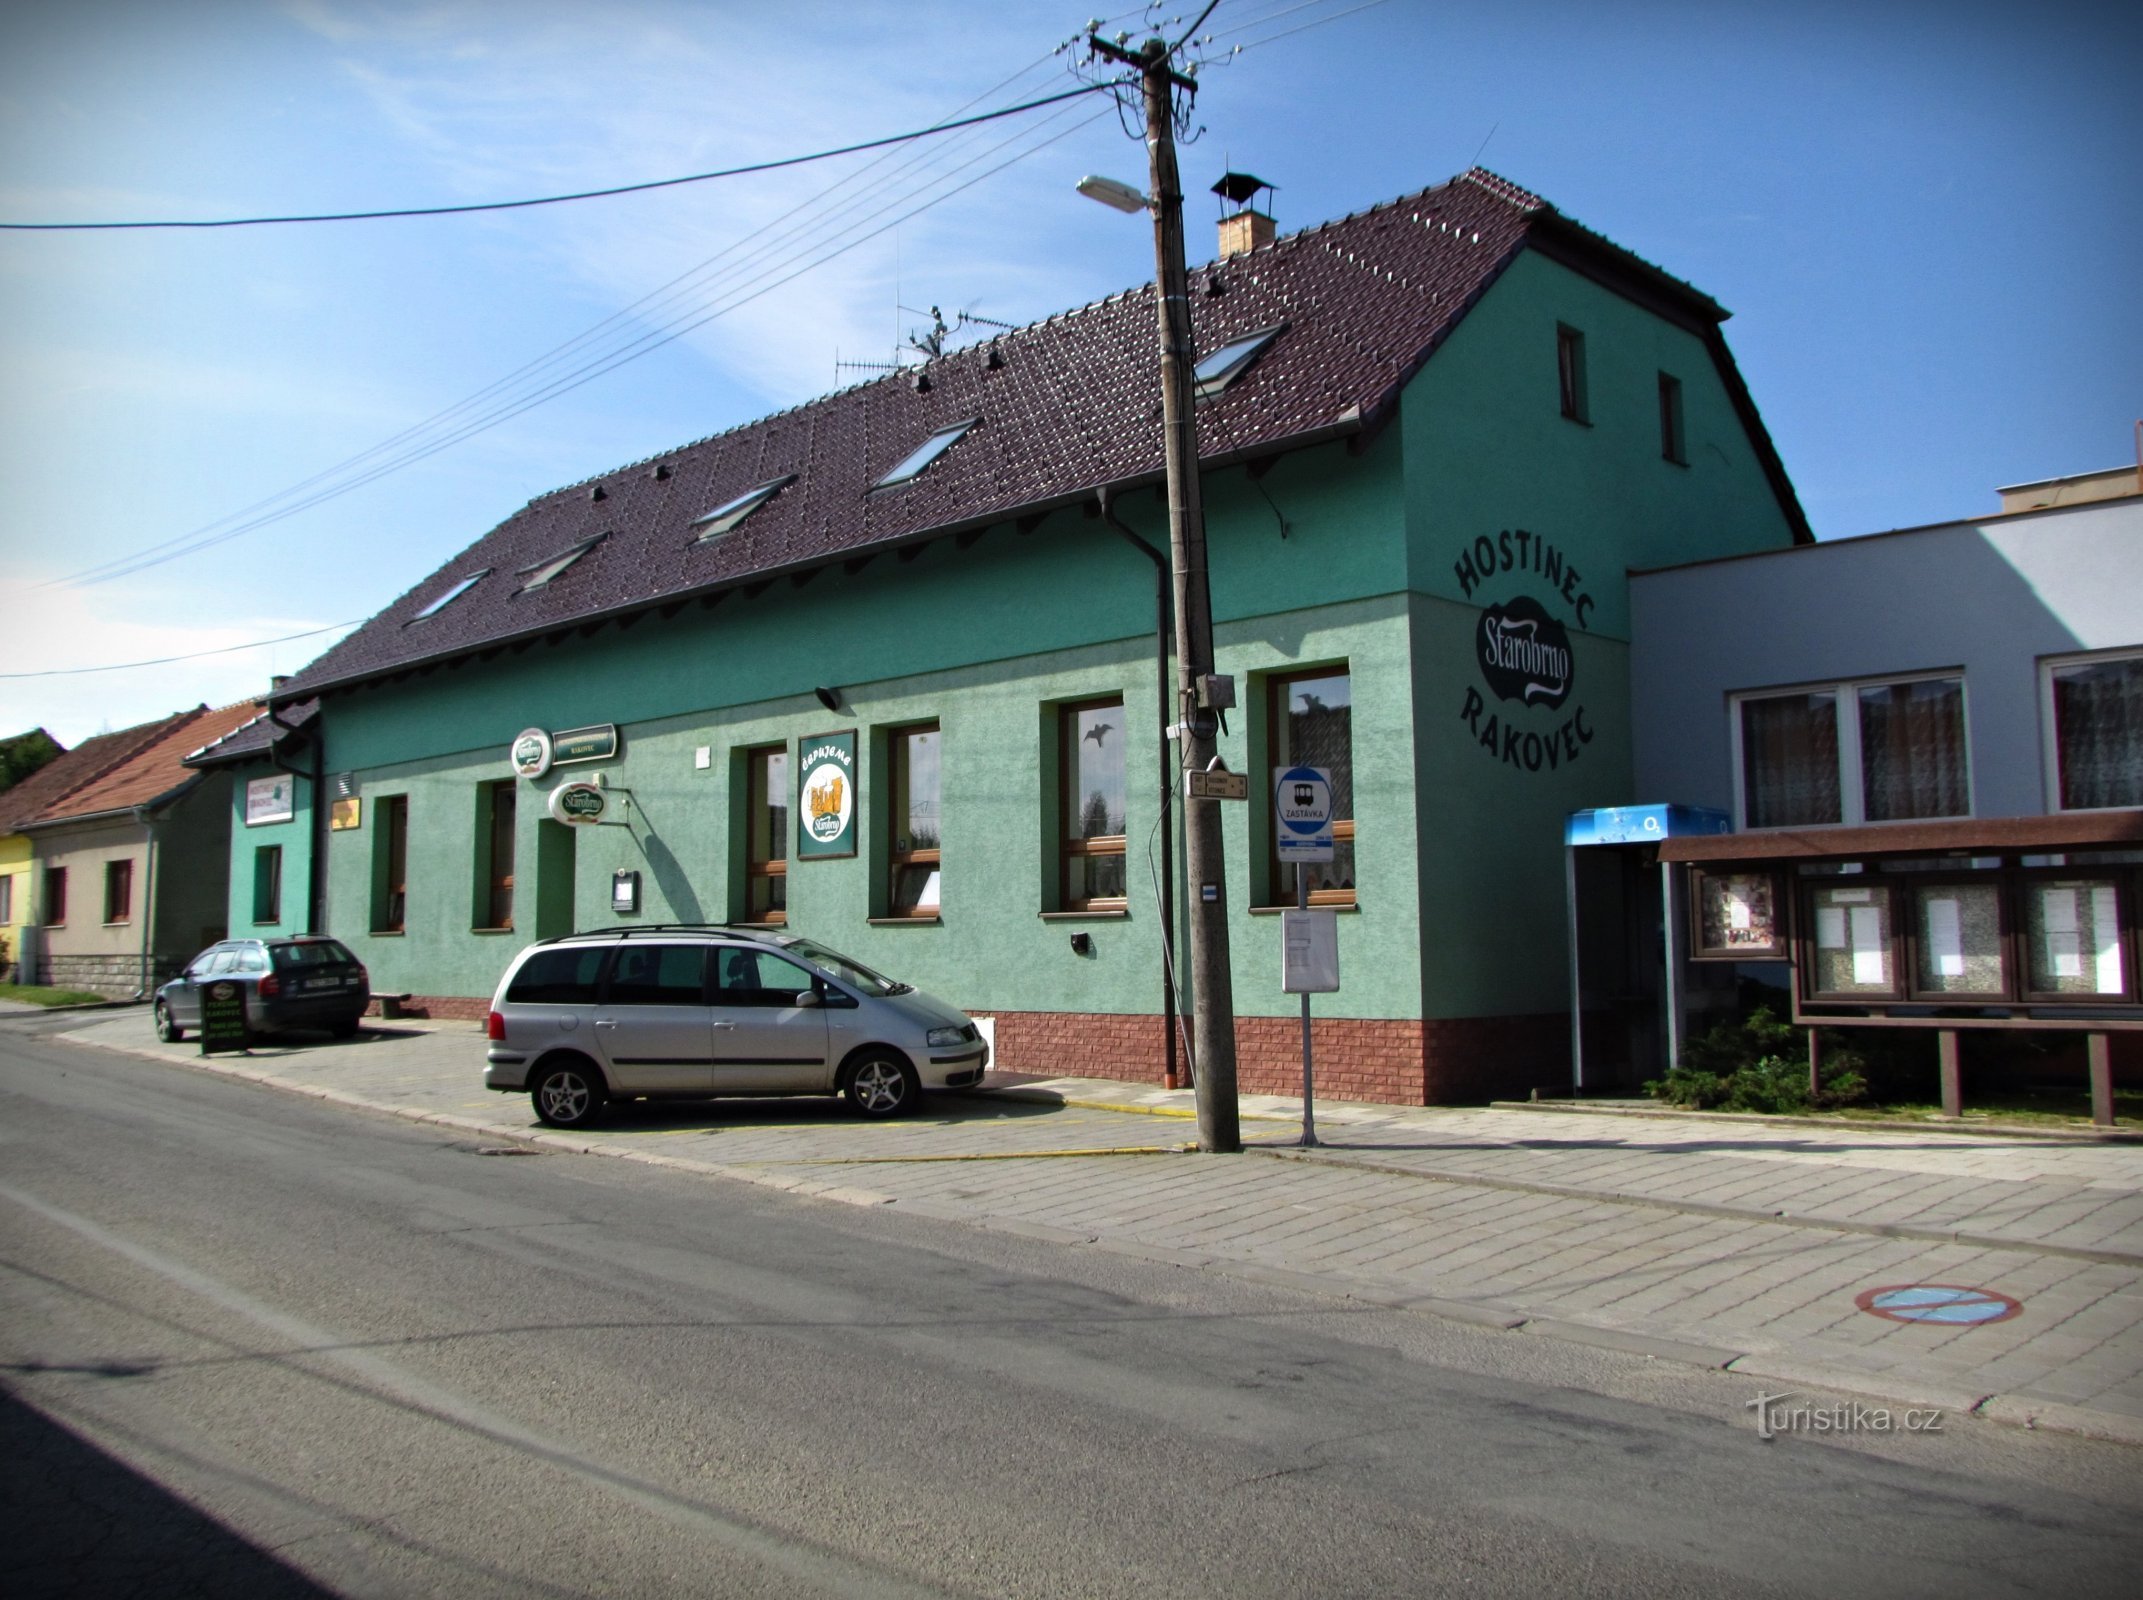 ブコビンカ - レストランのあるゲストハウス